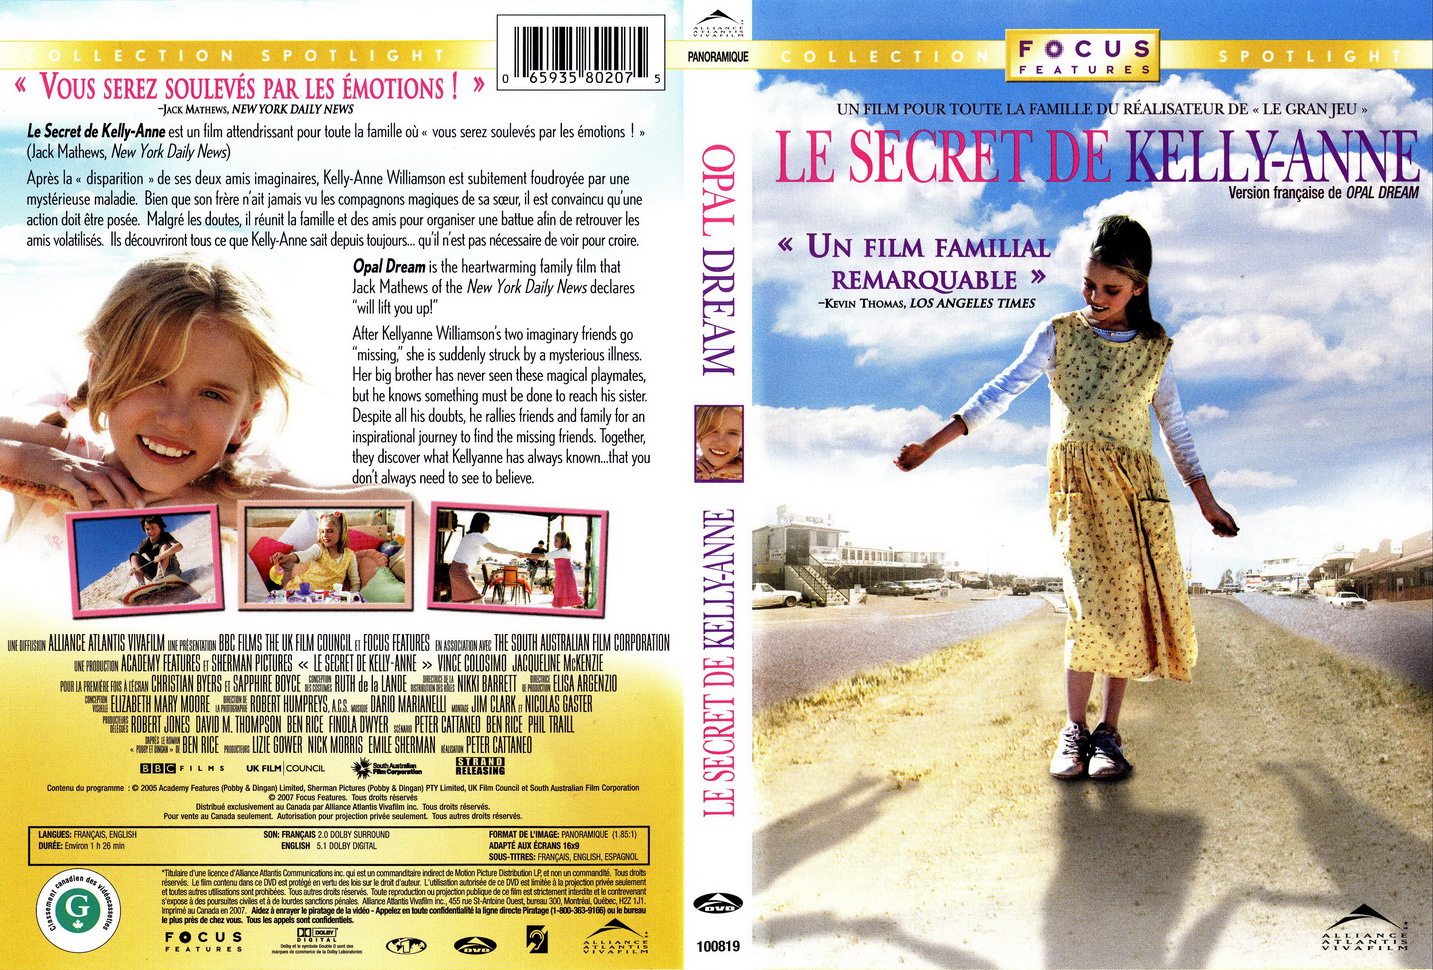 Jaquette DVD Le secret de Kelly-Anne